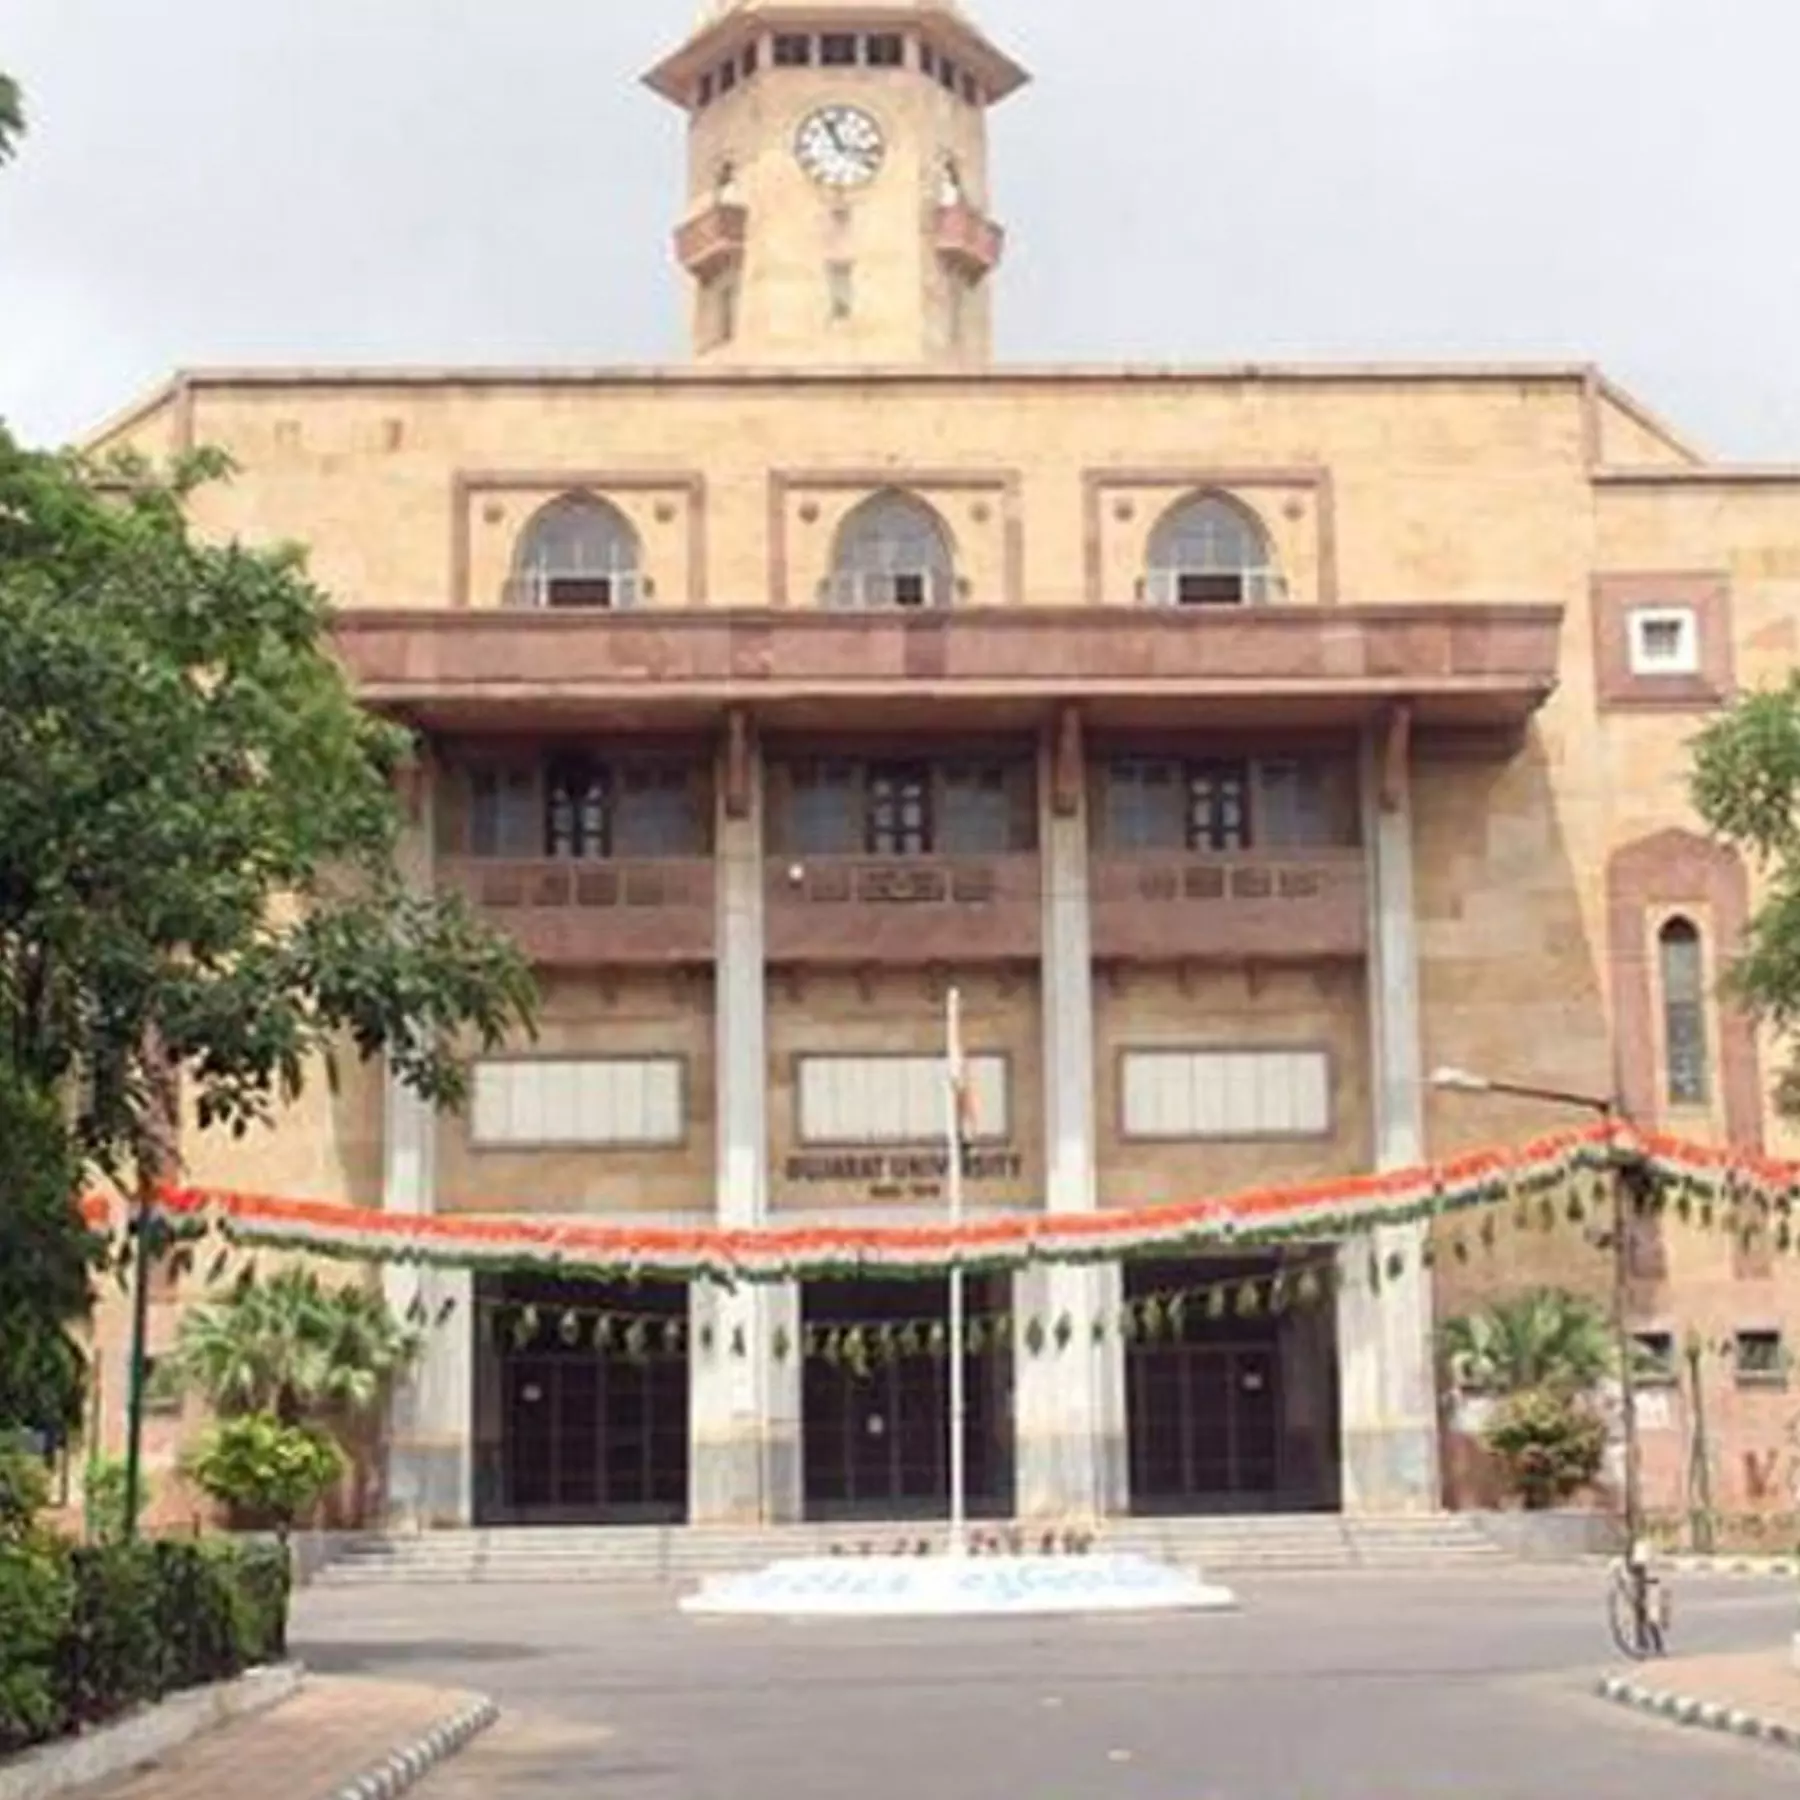 અમદાવાદ: ગુજરાત યુનિવર્સિટીમાં આયોજિત CCCની પરીક્ષા પણ અચાનક મોકુફ રાખવાનો નિર્ણય,ઉમેદવારોને કારણ પણ ન જણાવ્યુ